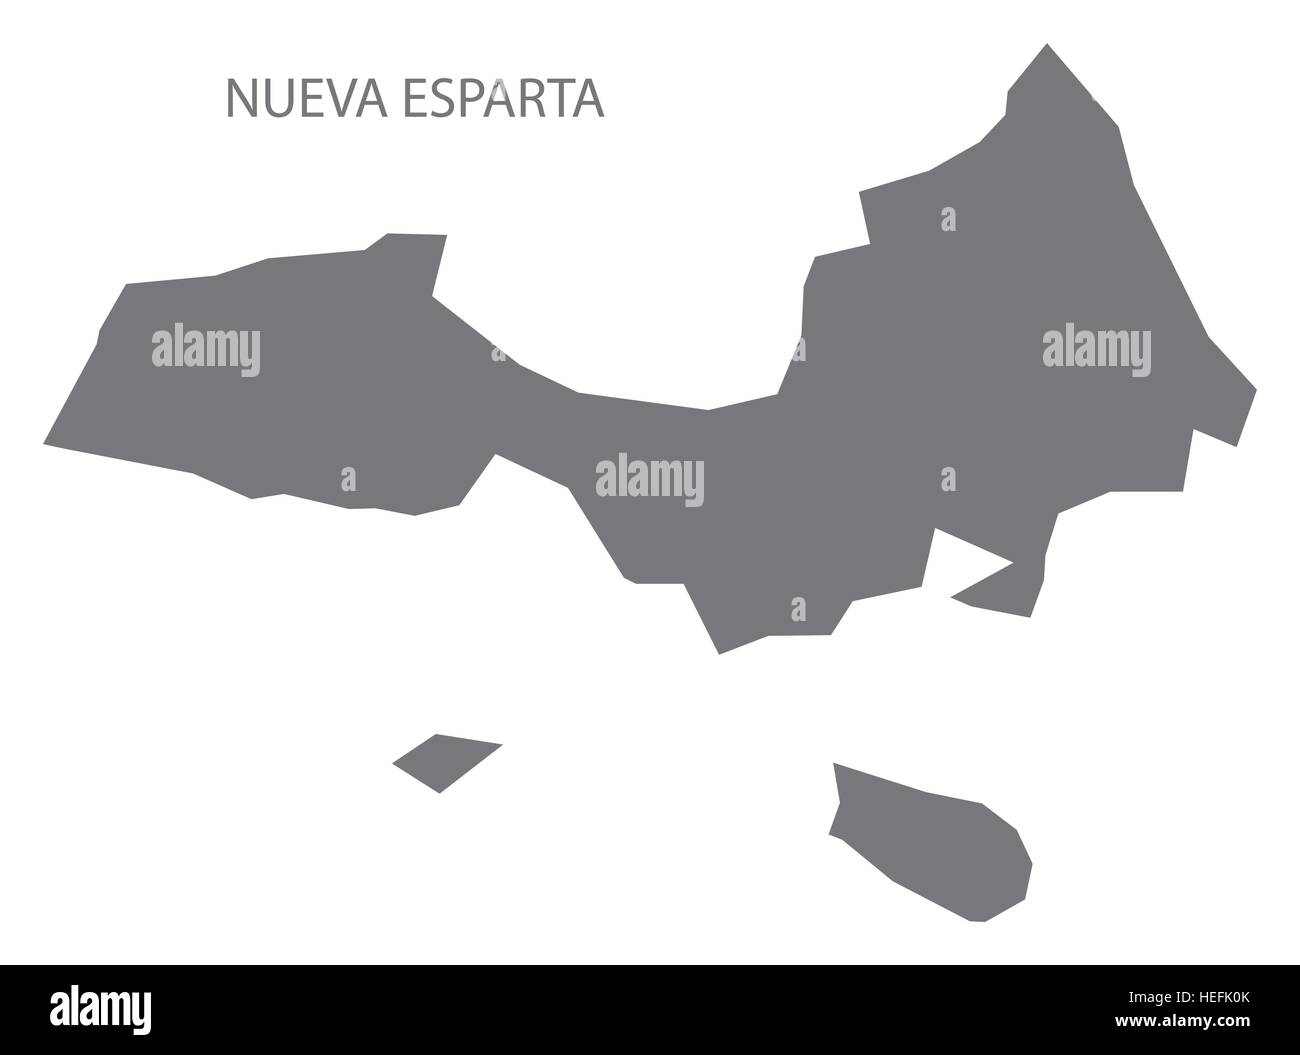 Nueva Esparta Venezuela Map in grey Stock Vector